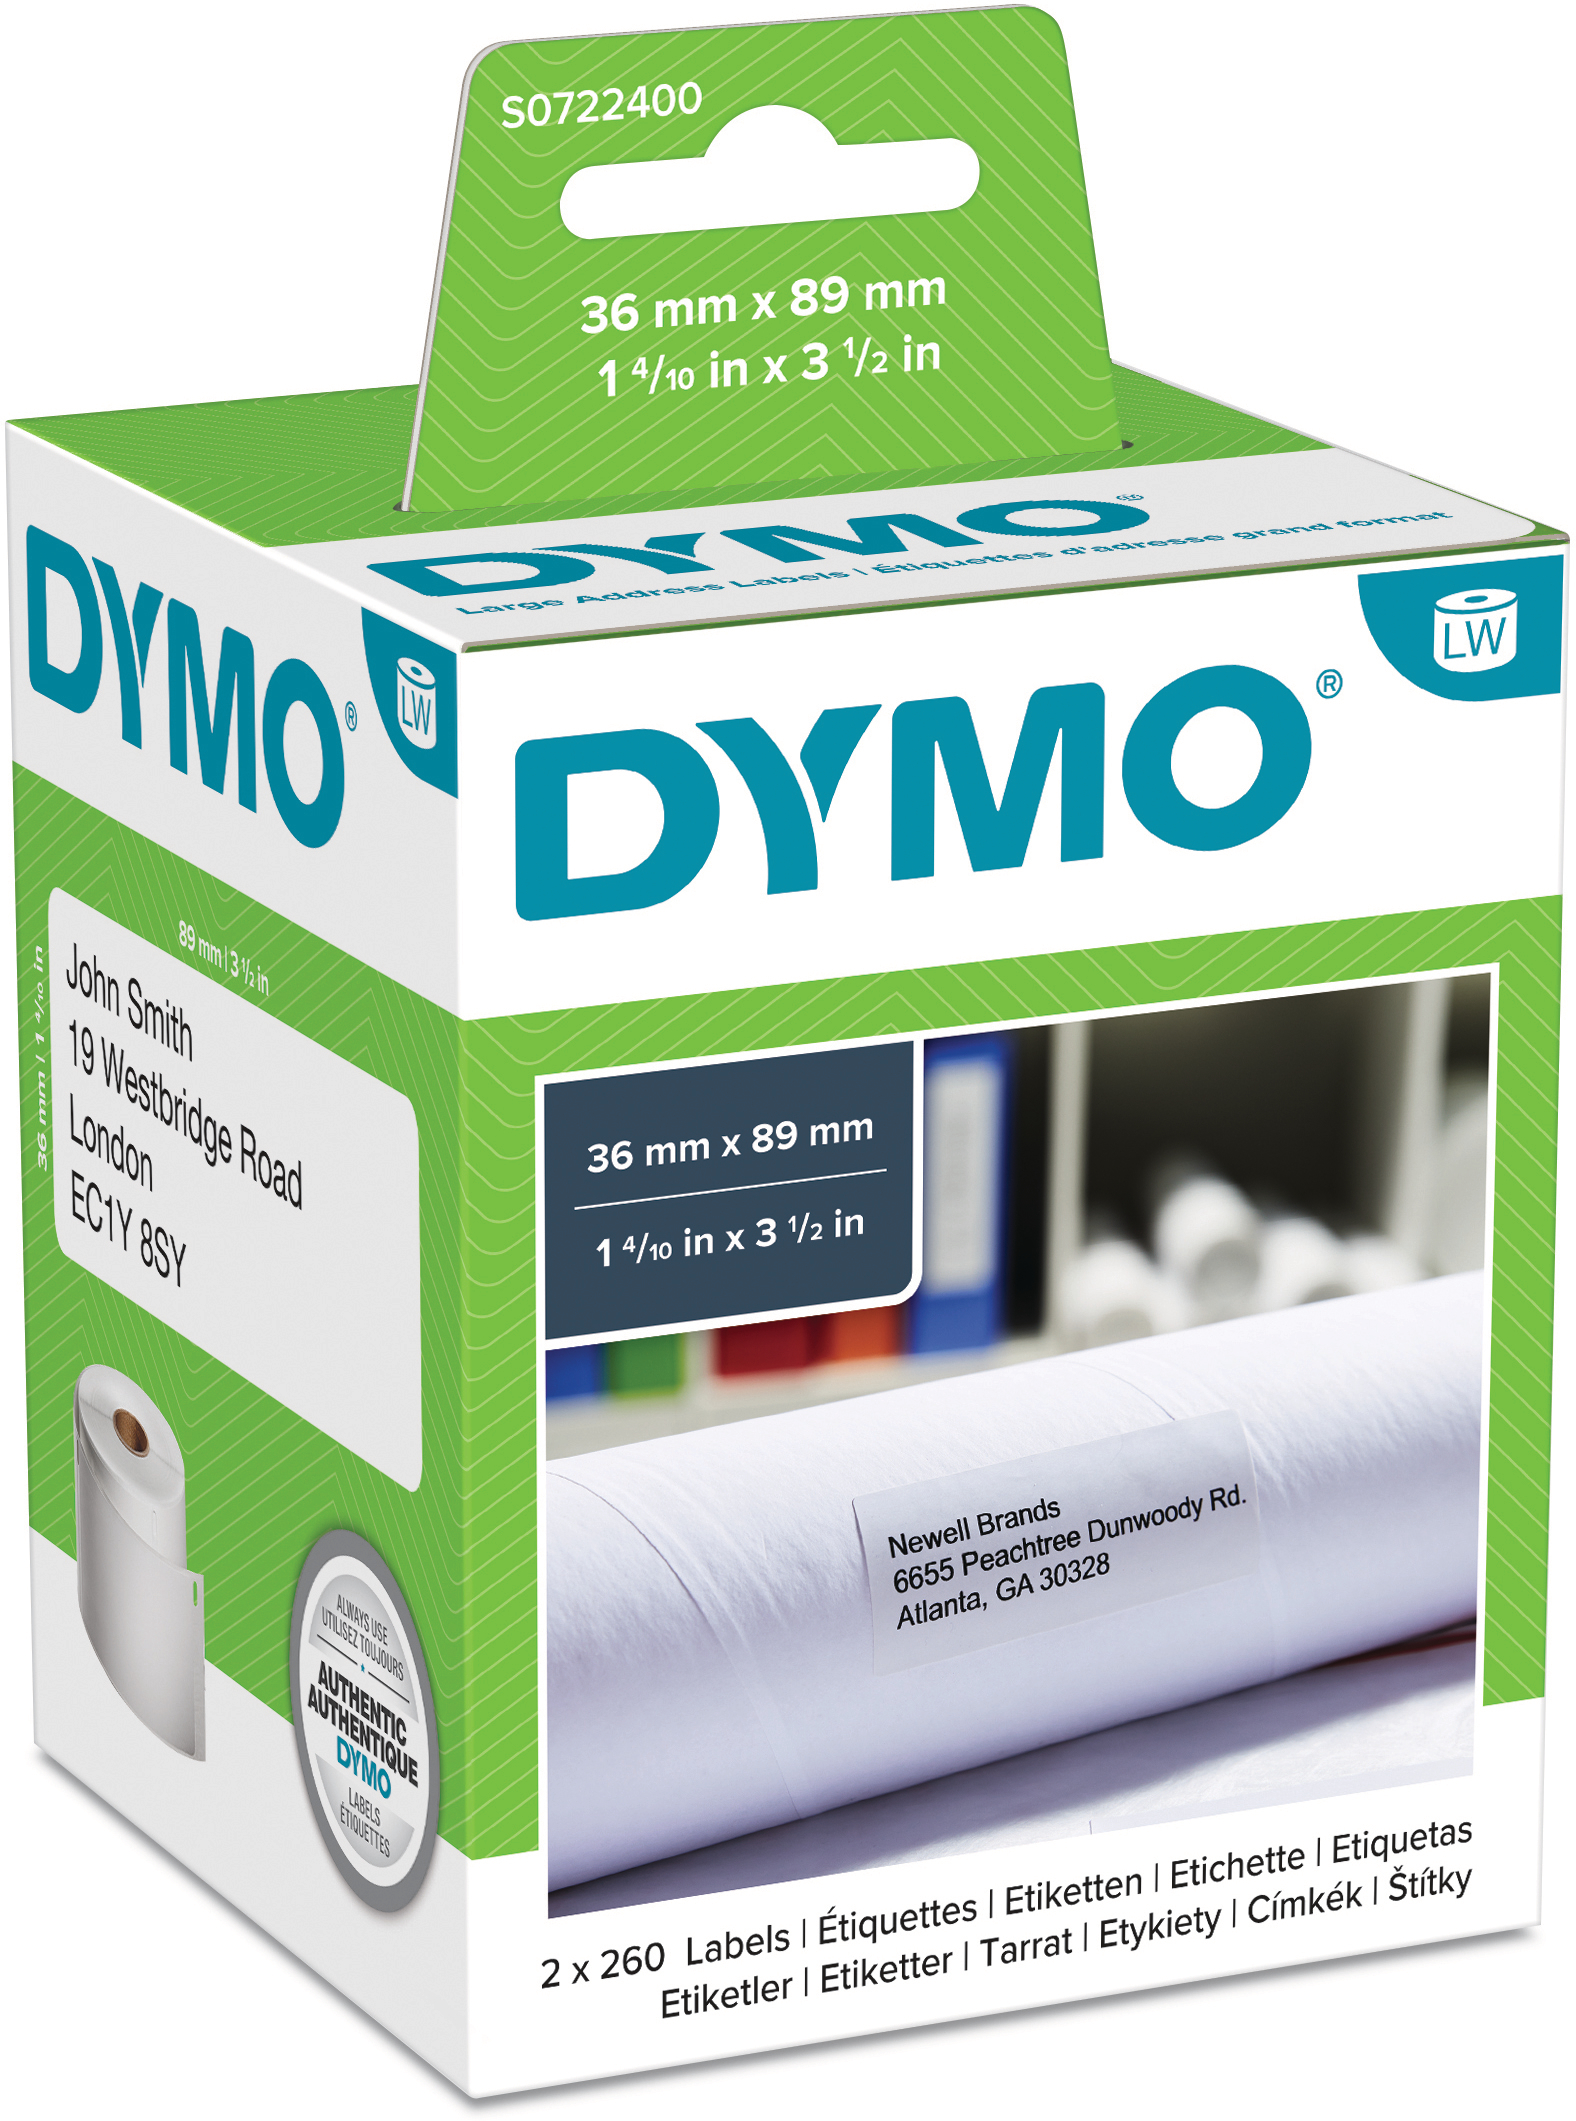 DYMO Etiquettes d'adresse S0722400 permanent 89x36mm permanent 89x36mm